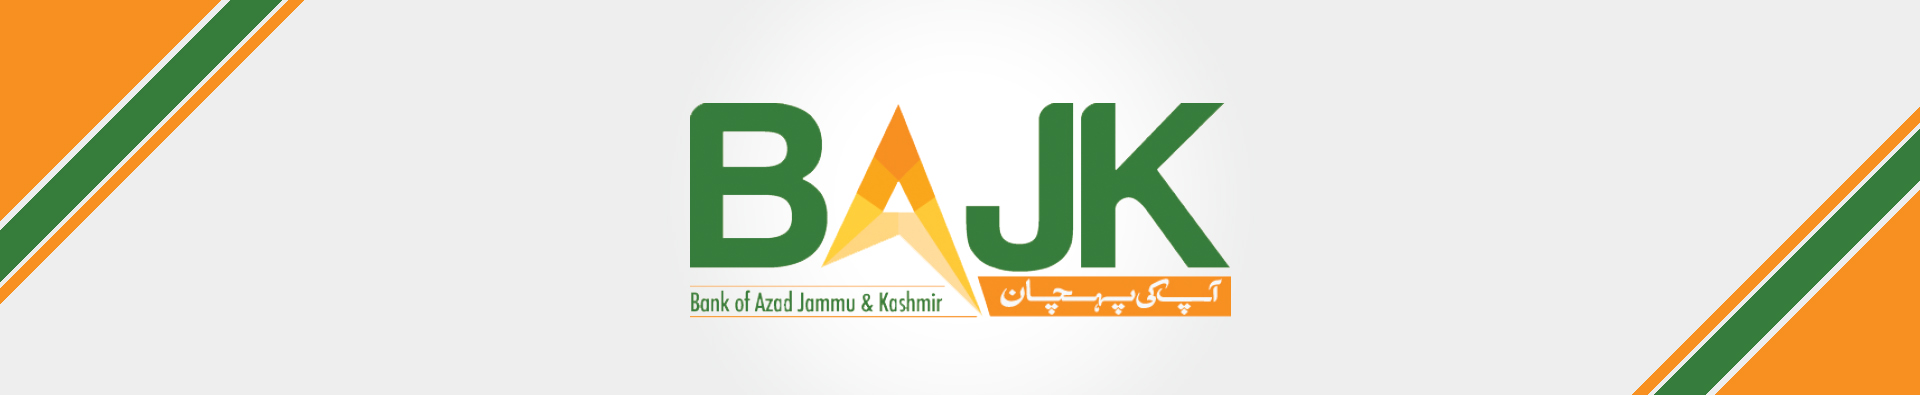 Bank of Azad Jammu & Kashmir